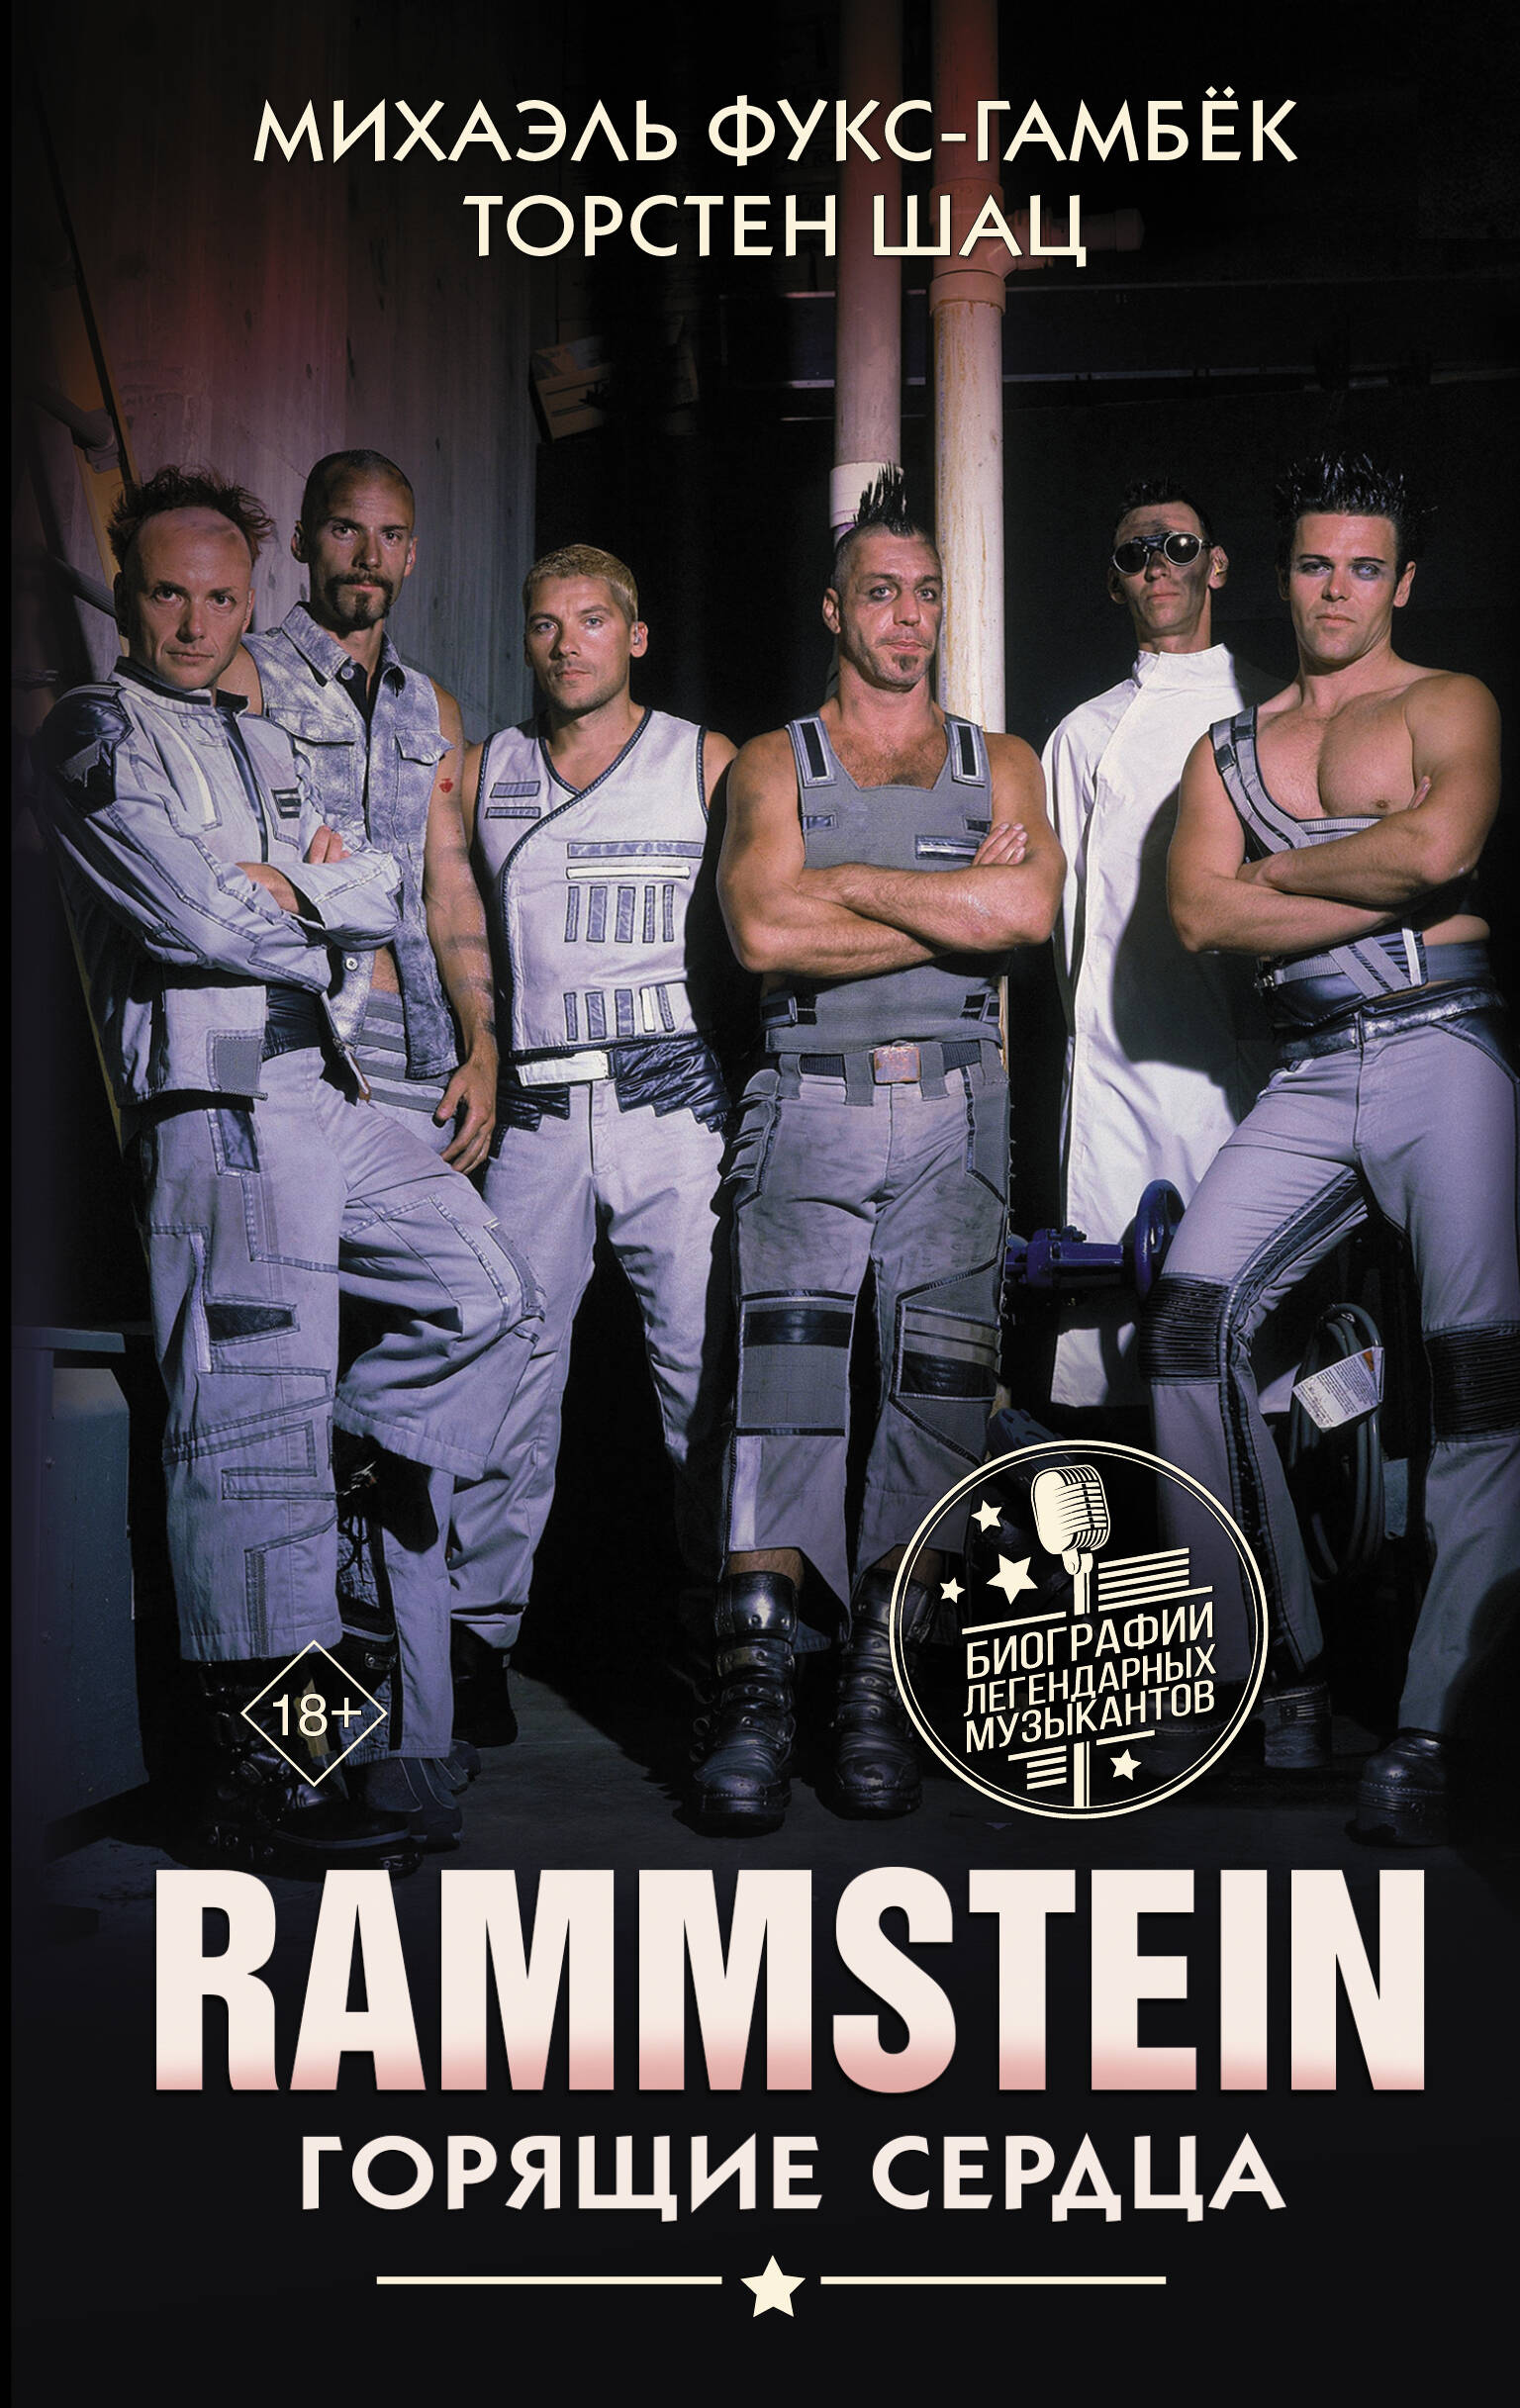 rammstein – liebe ist fur alle da remastered edition 2 lp Фукс-Гамбёк Михаэль Rammstein. Горящие сердца